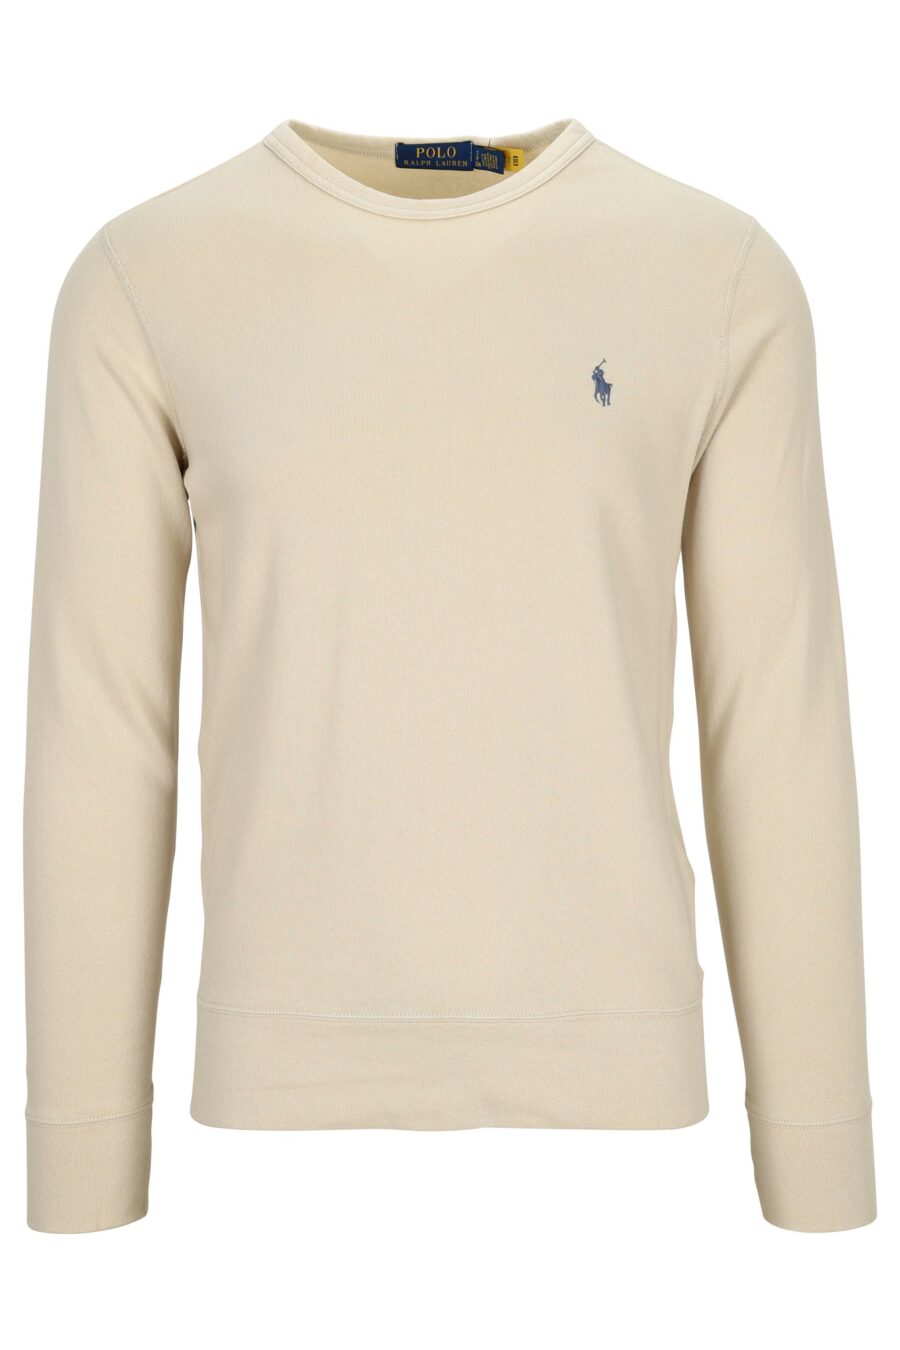 Beige sweatshirt with mini-logo "polo" - 3616535913264